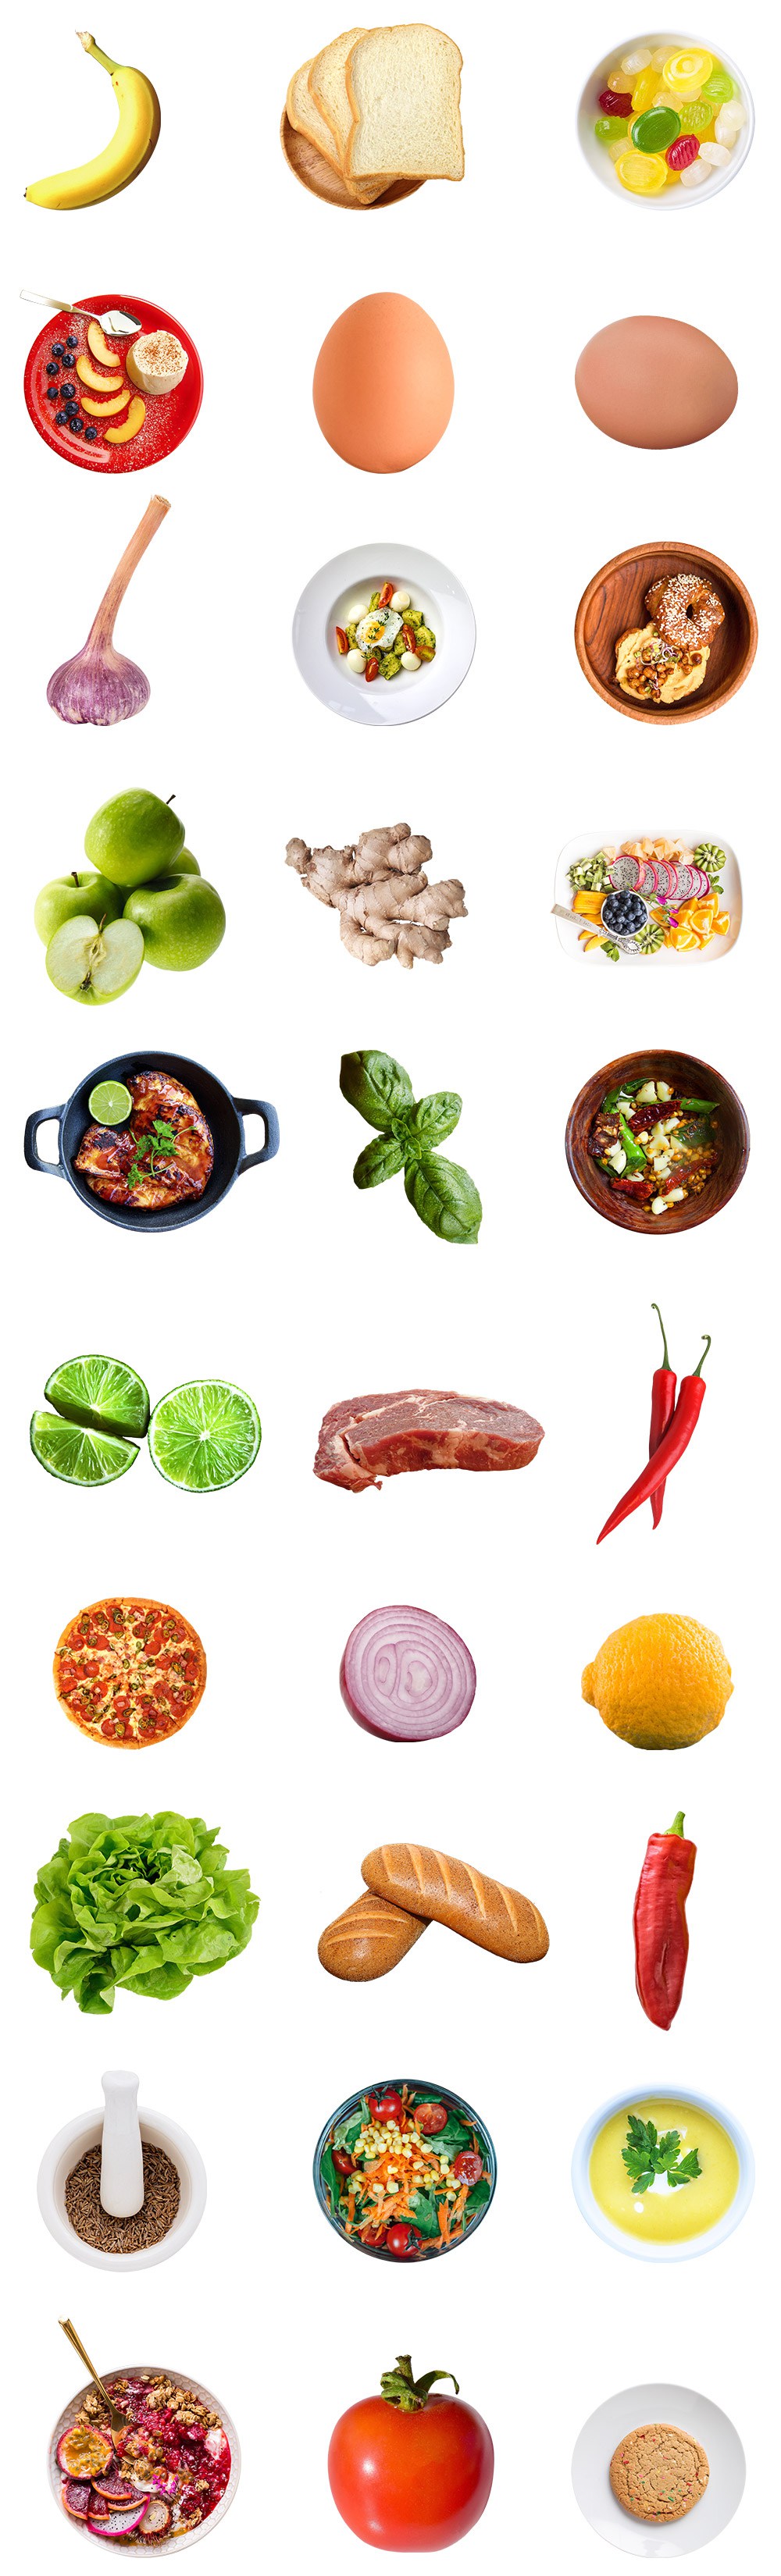 30个独立高清食物图片素材 30 Isolated Food Images